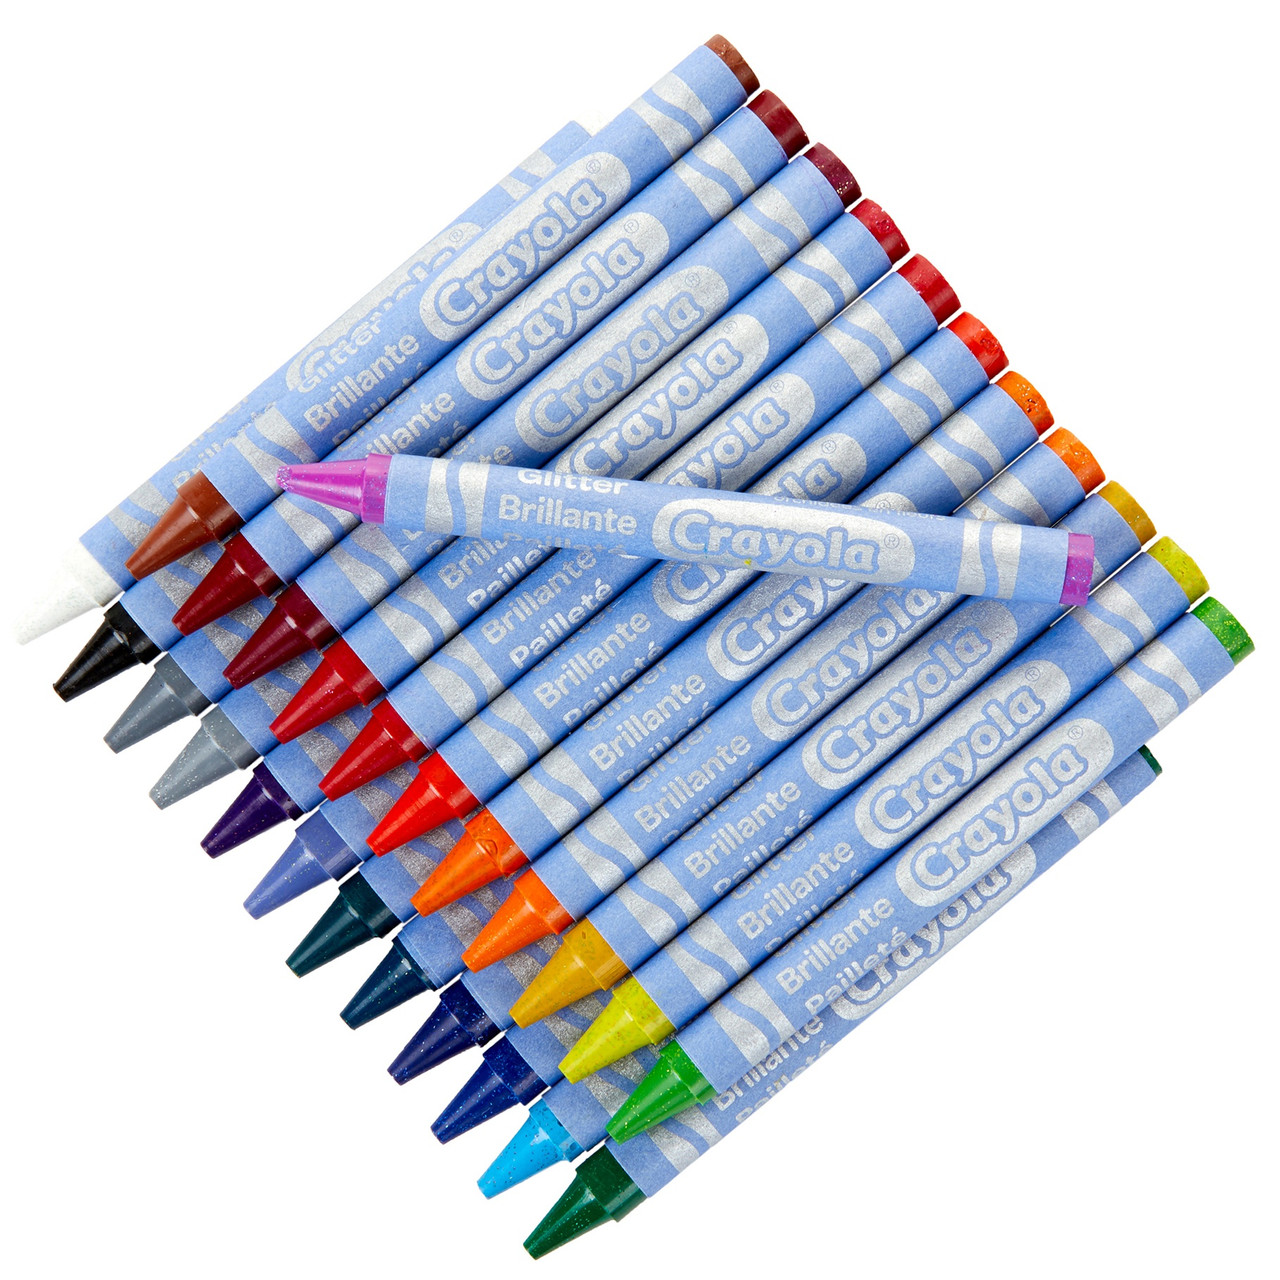 Crayola Crayons-Glitter 24/Pkg 52-3715 - GettyCrafts